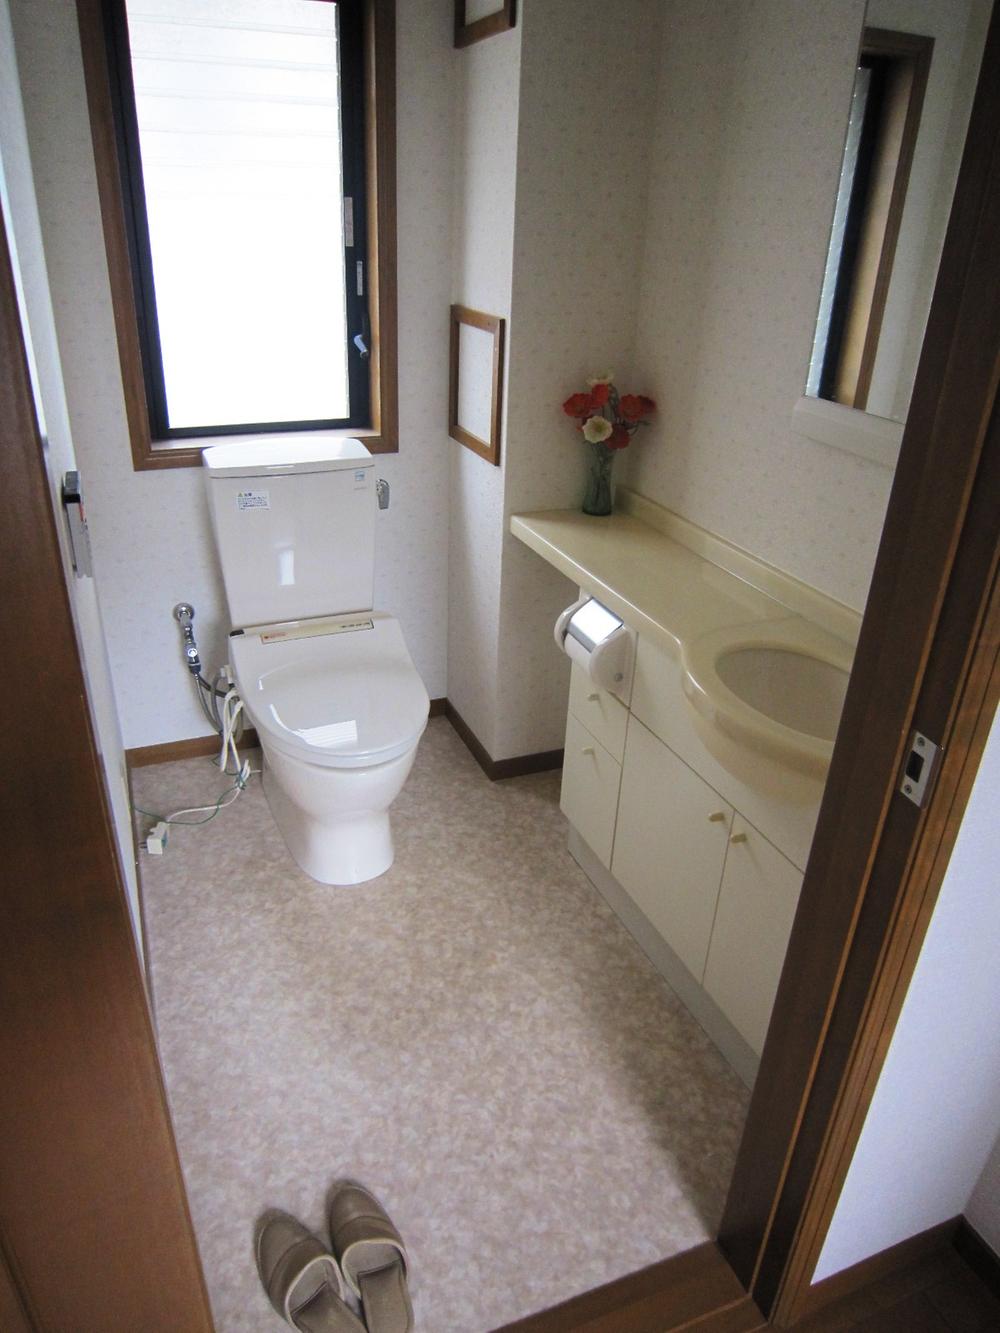 Toilet. Second floor toilet